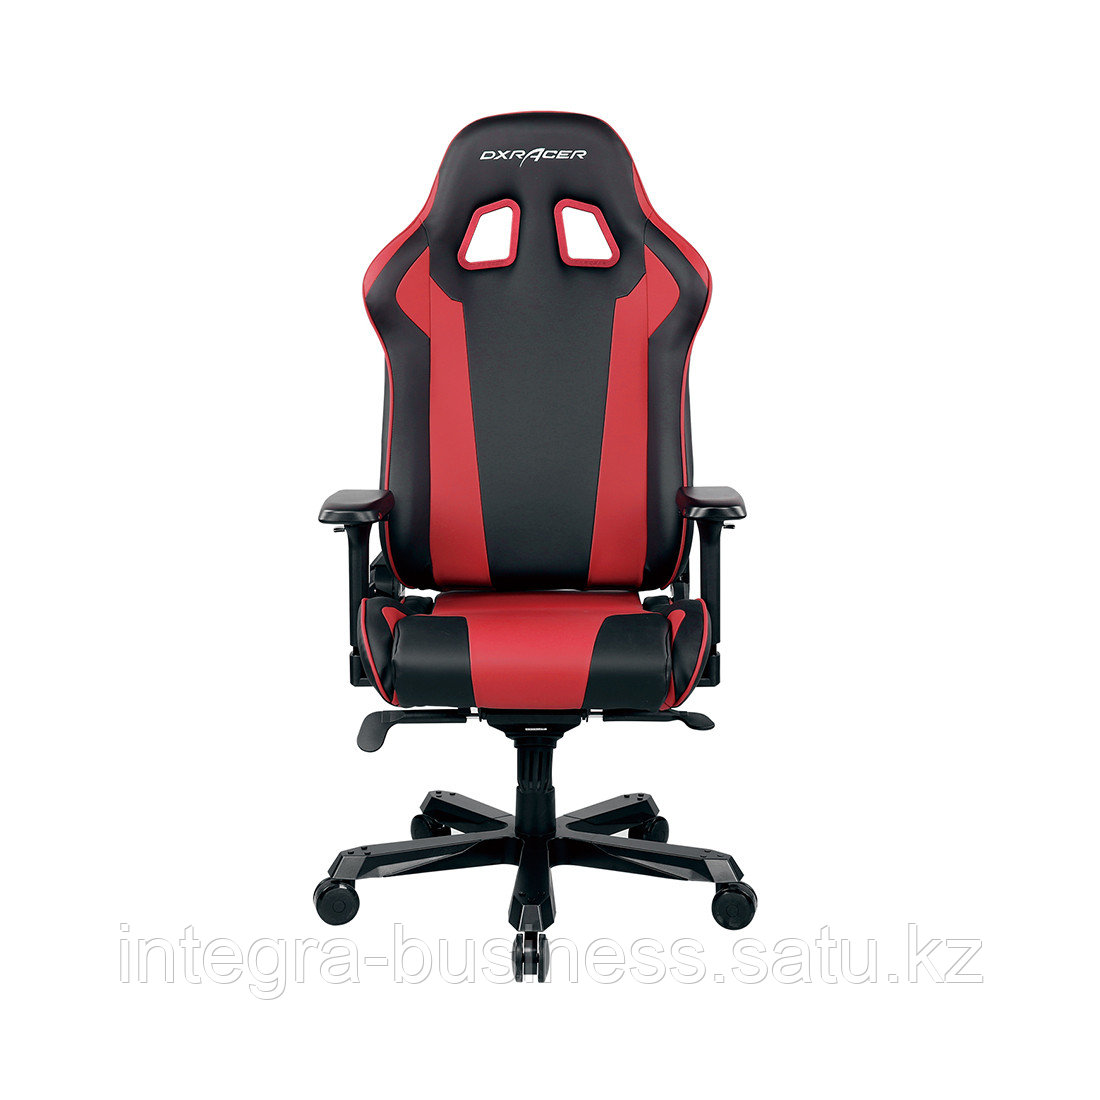 Игровое компьютерное кресло DX Racer GC/K99/NR, фото 1